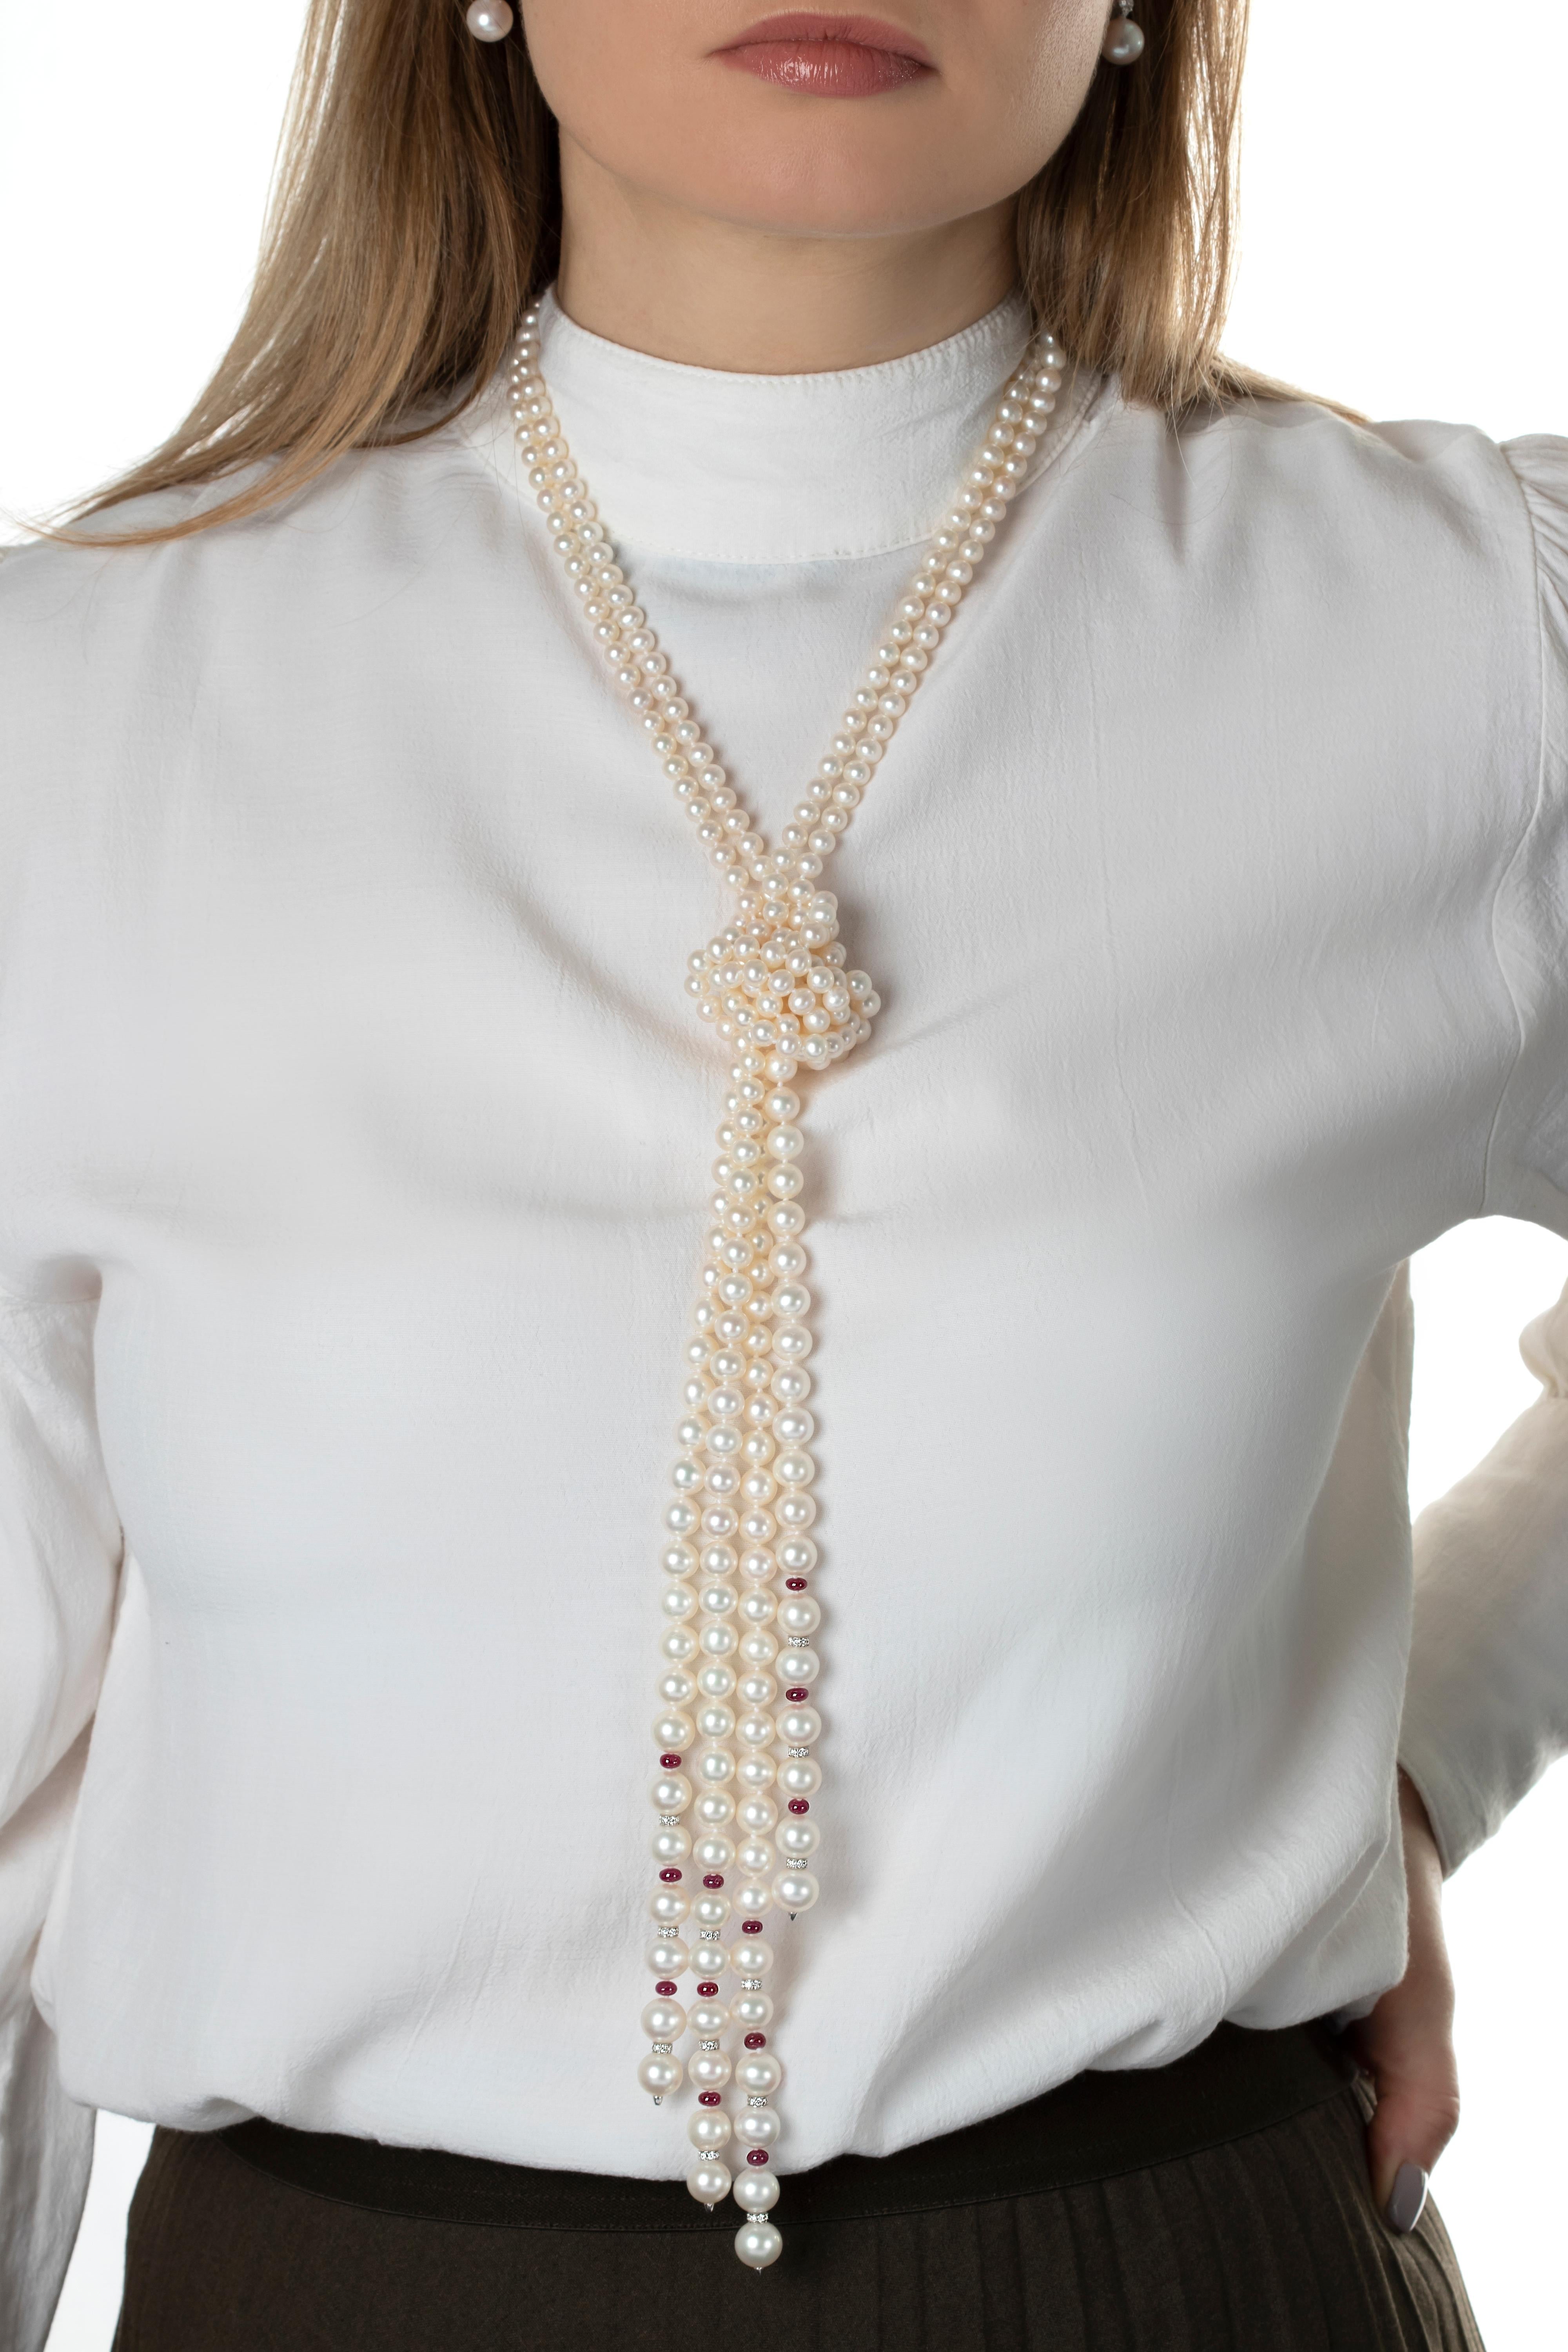 Die zeitlose Kombination aus Rubin, Diamant und Perle wurde von Yoko London in dieser einzigartigen Halskette neu interpretiert. Mit zwei getrennten Längen von Süßwasserperlen, die an den Enden mit Diamant- und Rubin-Rondellen durchsetzt sind. Die